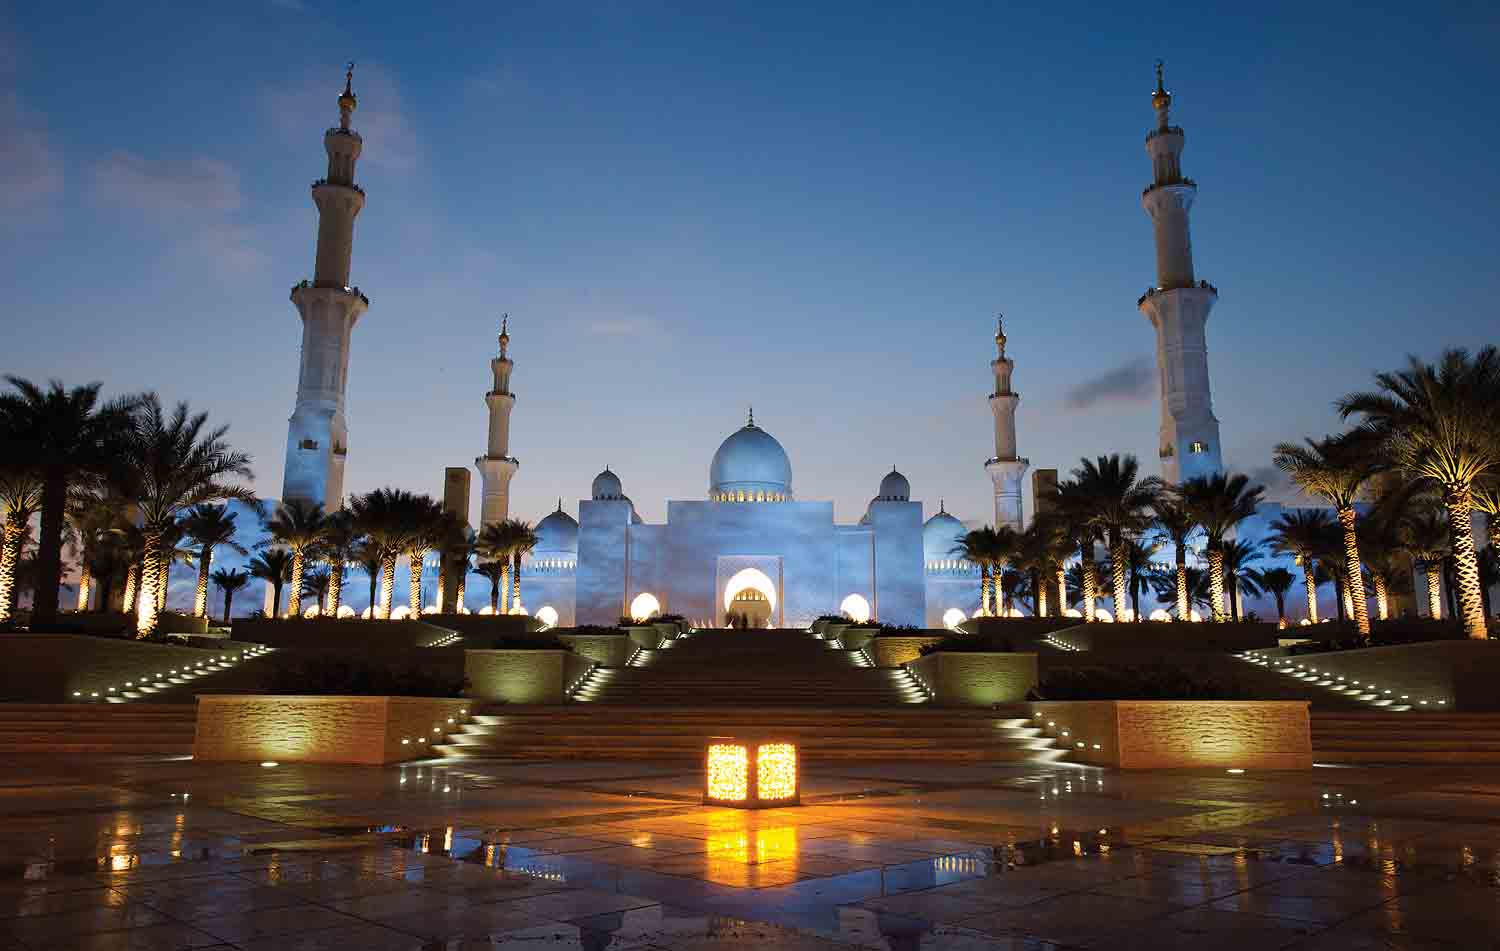 جامع الشيخ زايد الكبير الأول إقليميا والرابع عالميا ضمن فئة 